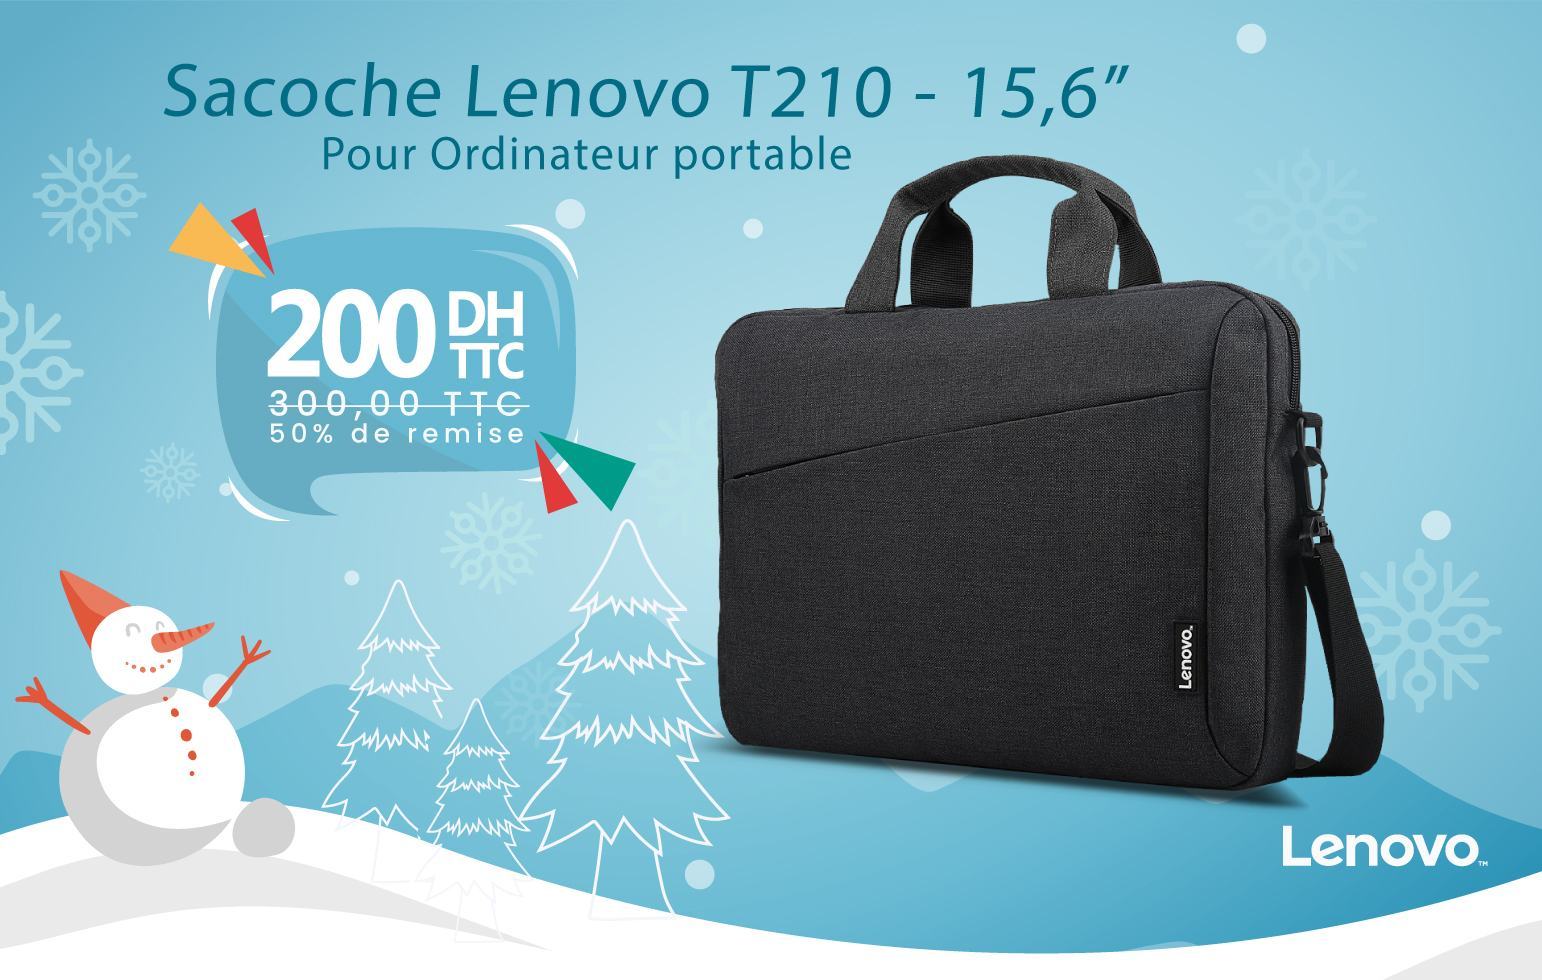 Sacoche Lenovo B210 - 